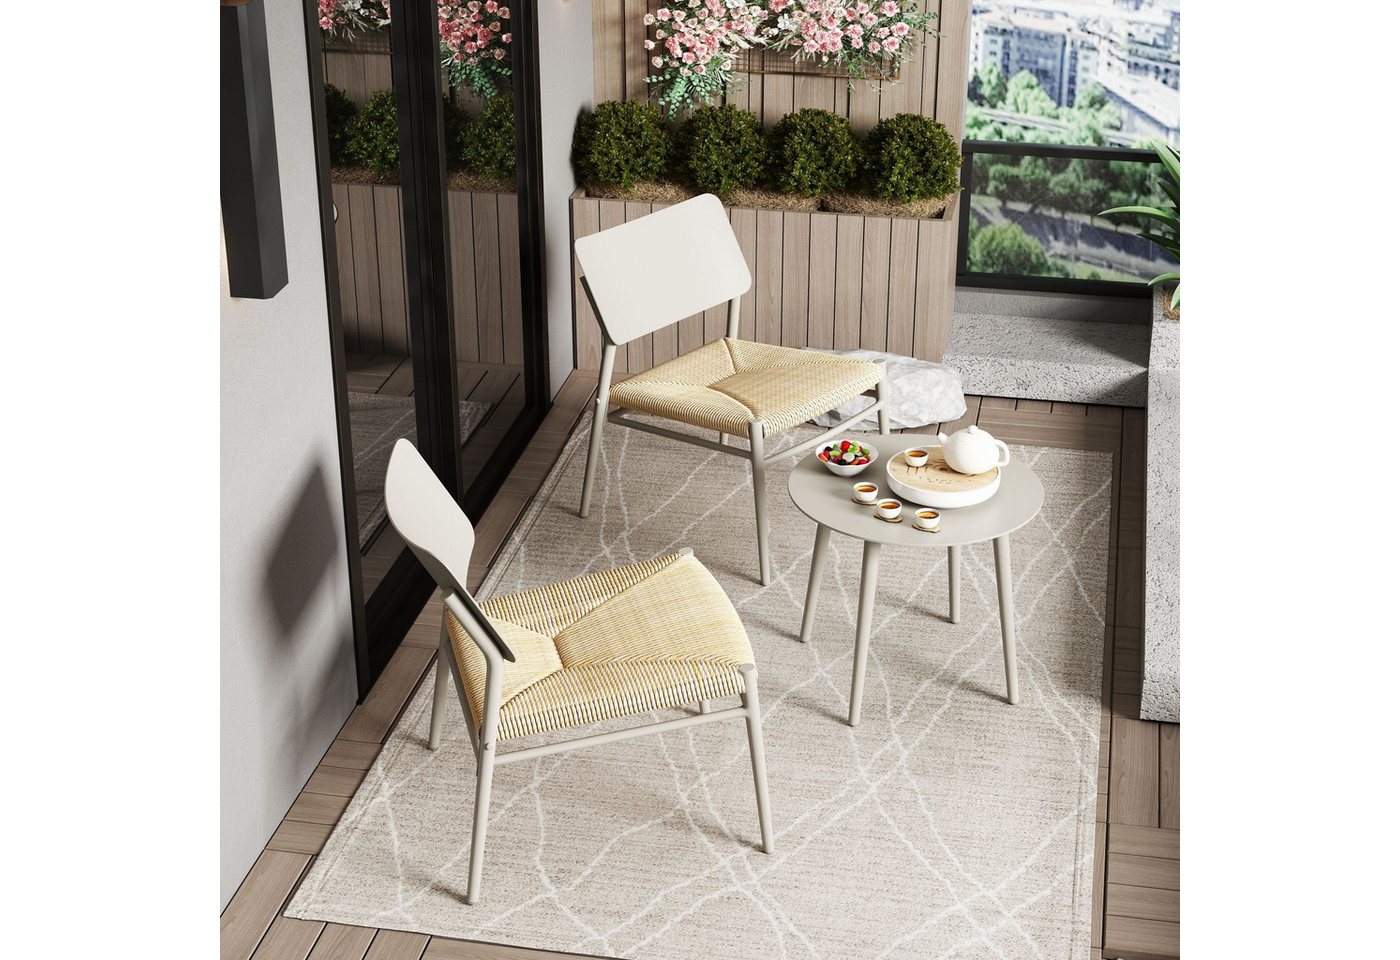 Flieks Balkonset, Rattan Sitzmöbel-Set mit Gartenstühle und Gartentisch aus Aluminium von Flieks